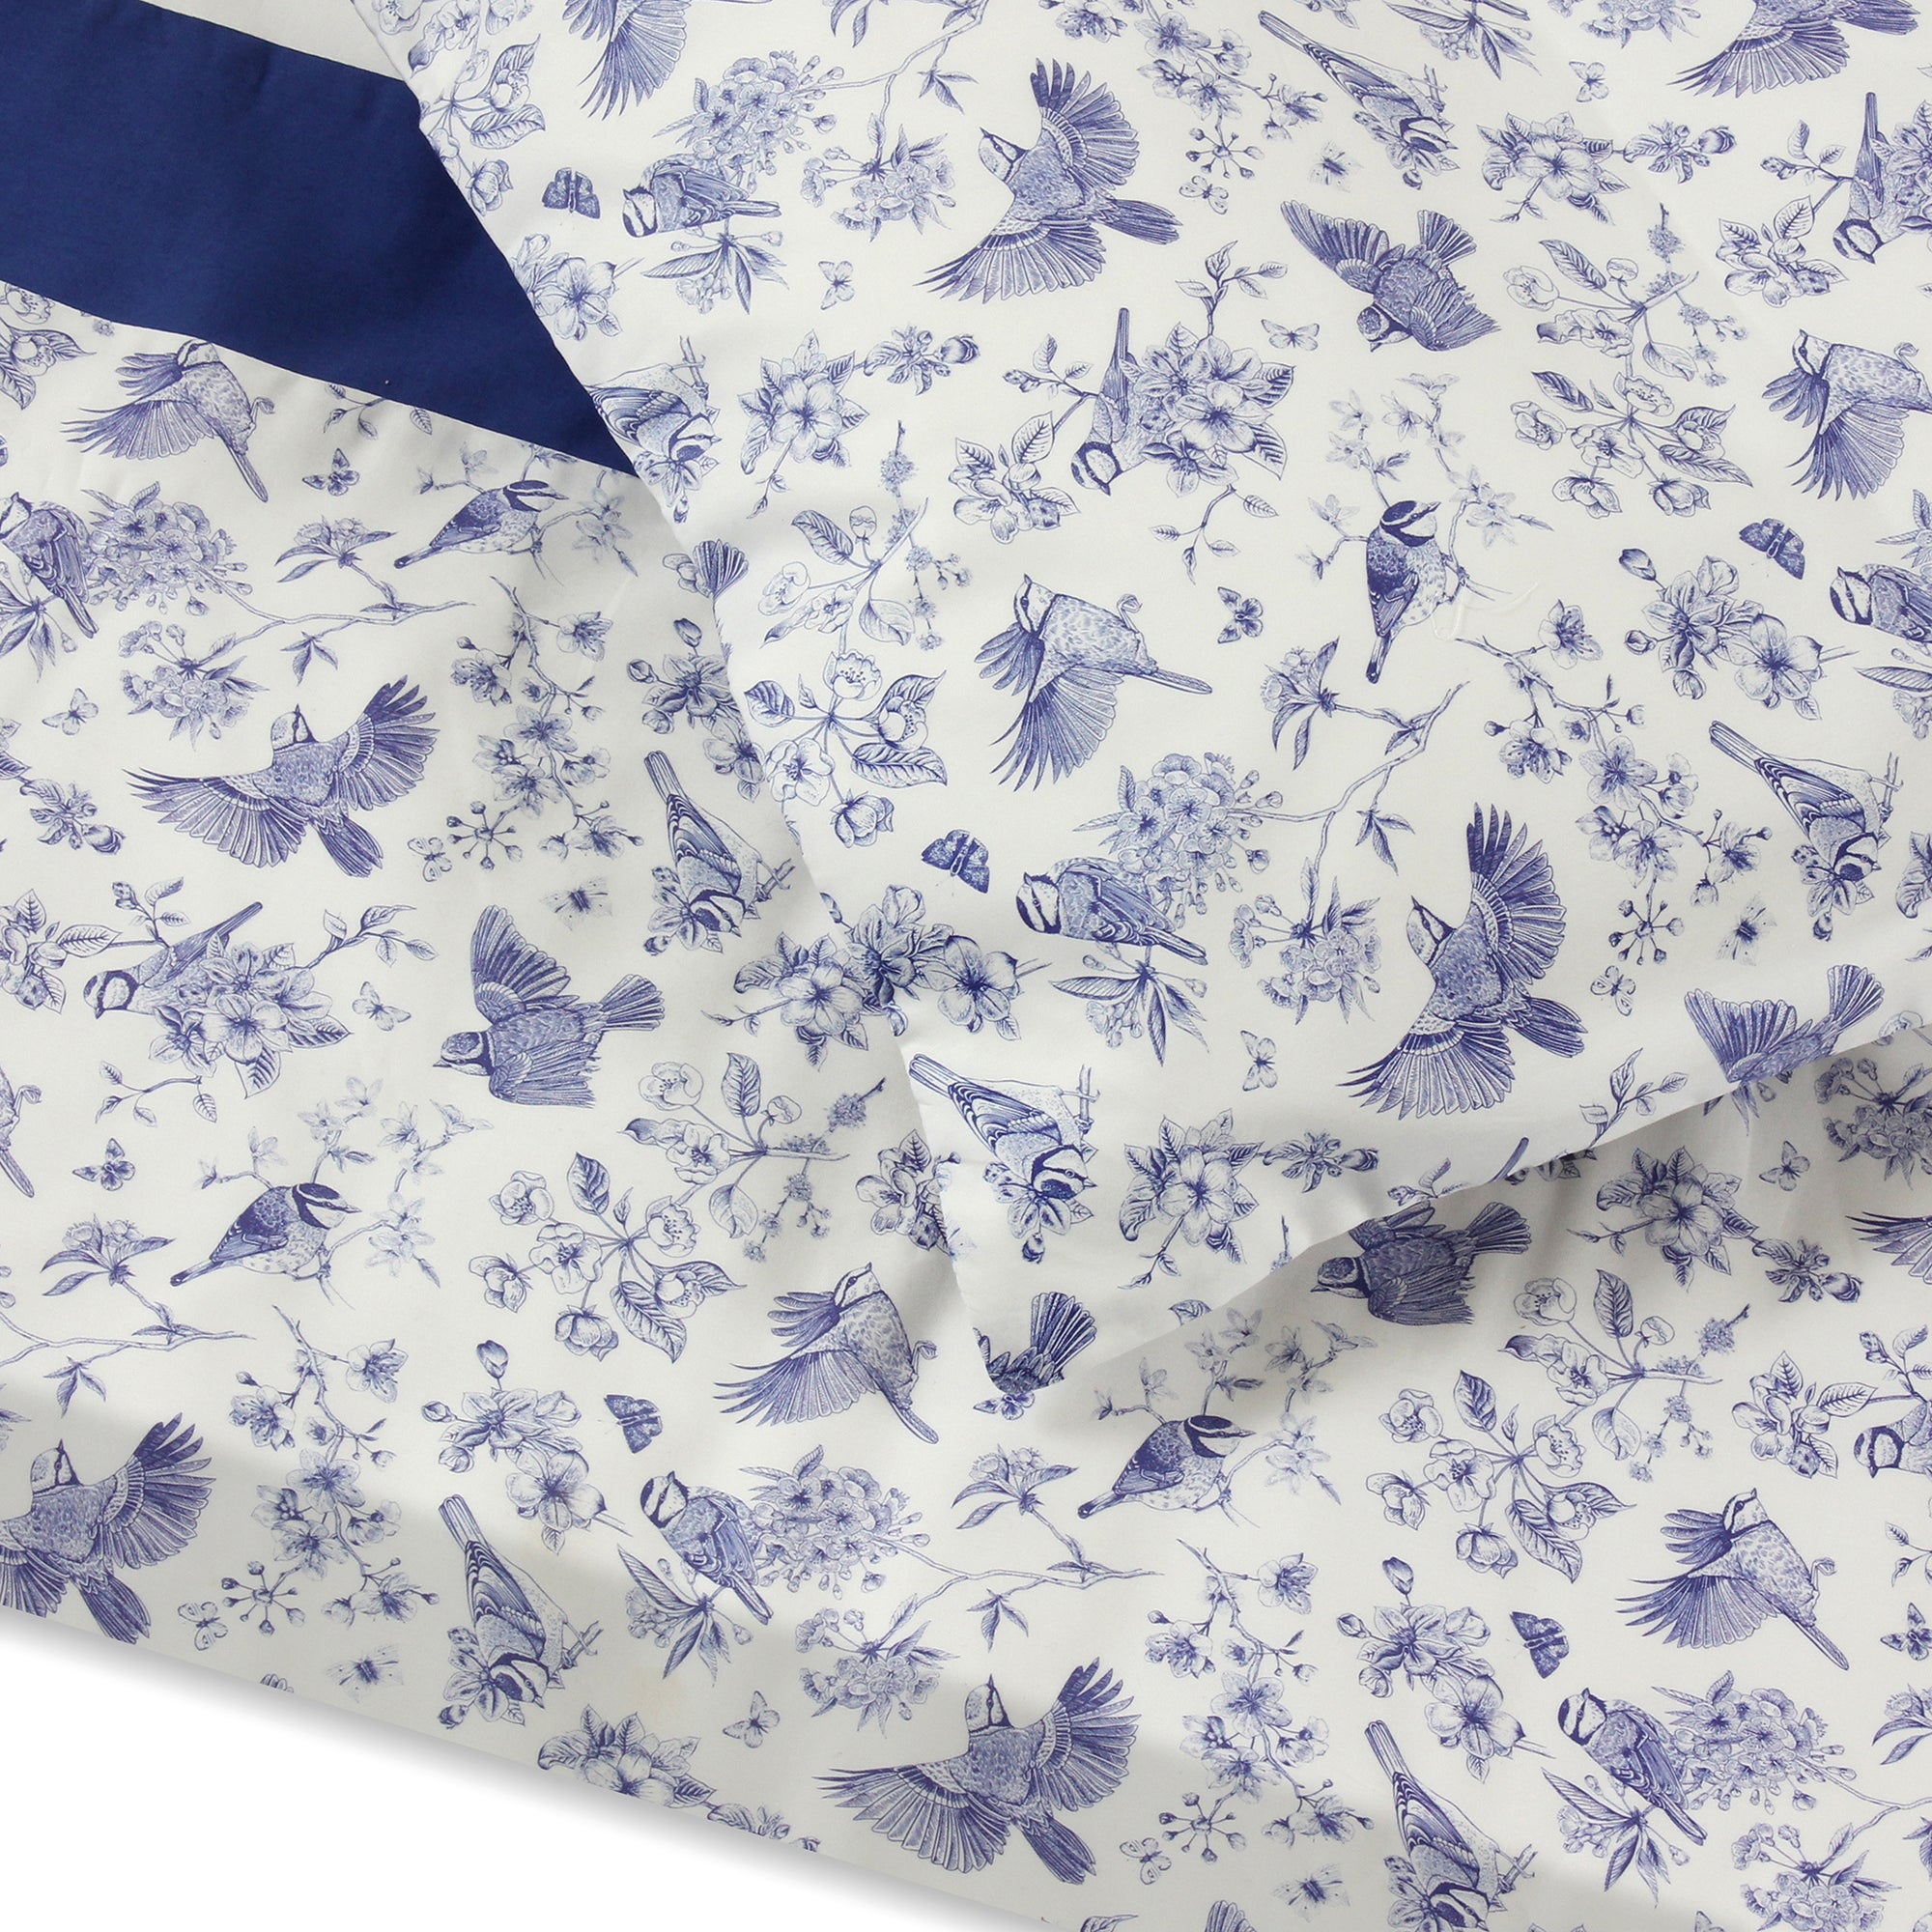 Blue Robins Duvet + Pillowcases